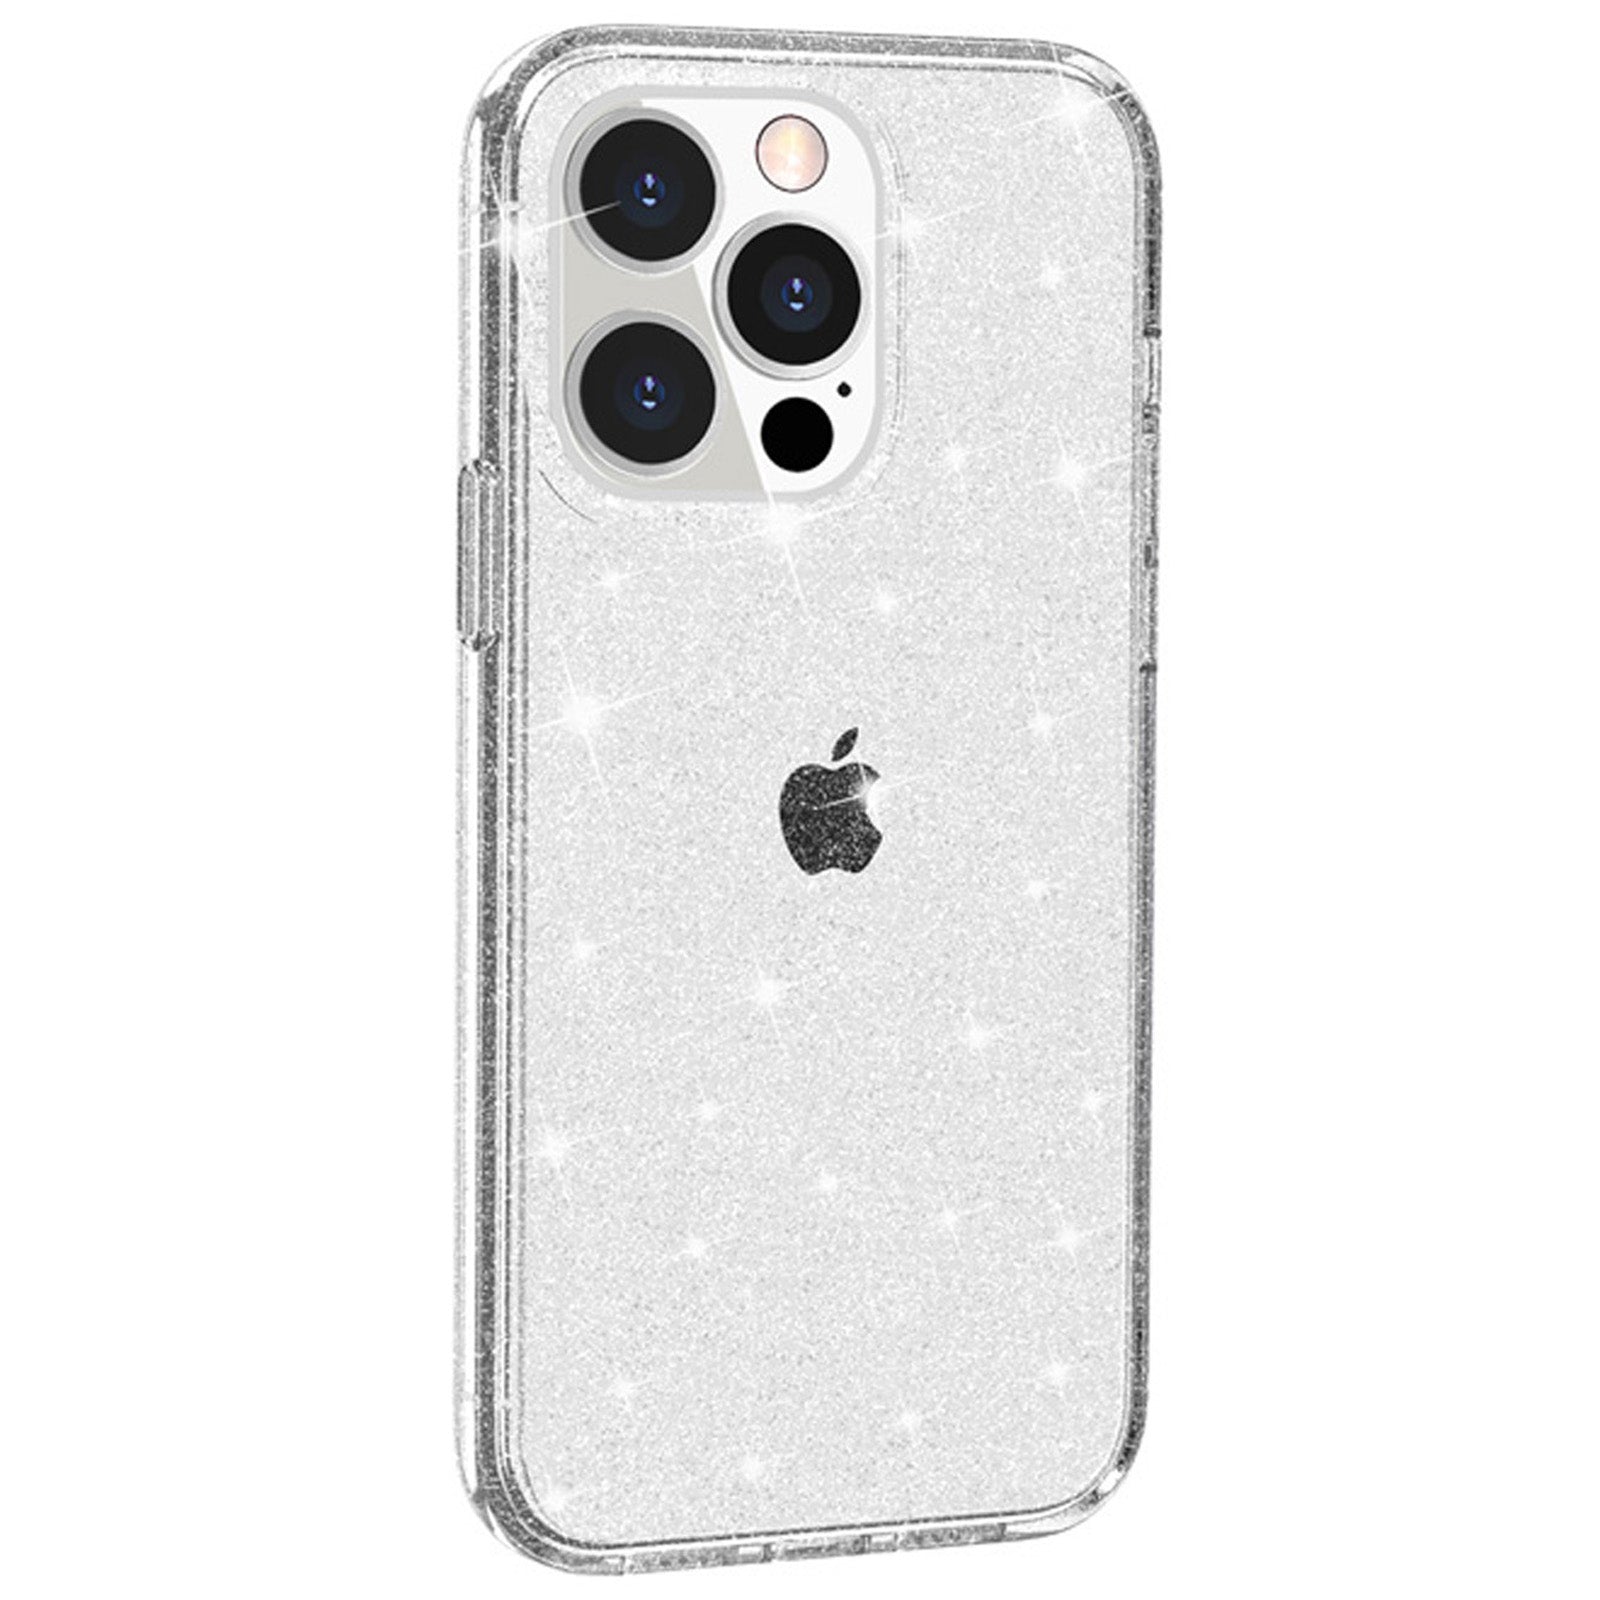 Uniqkart for iPhone 15 Pro Sparkly Glitter Anti-Scratch Case Hard PC + Soft TPU Phone Cover - White